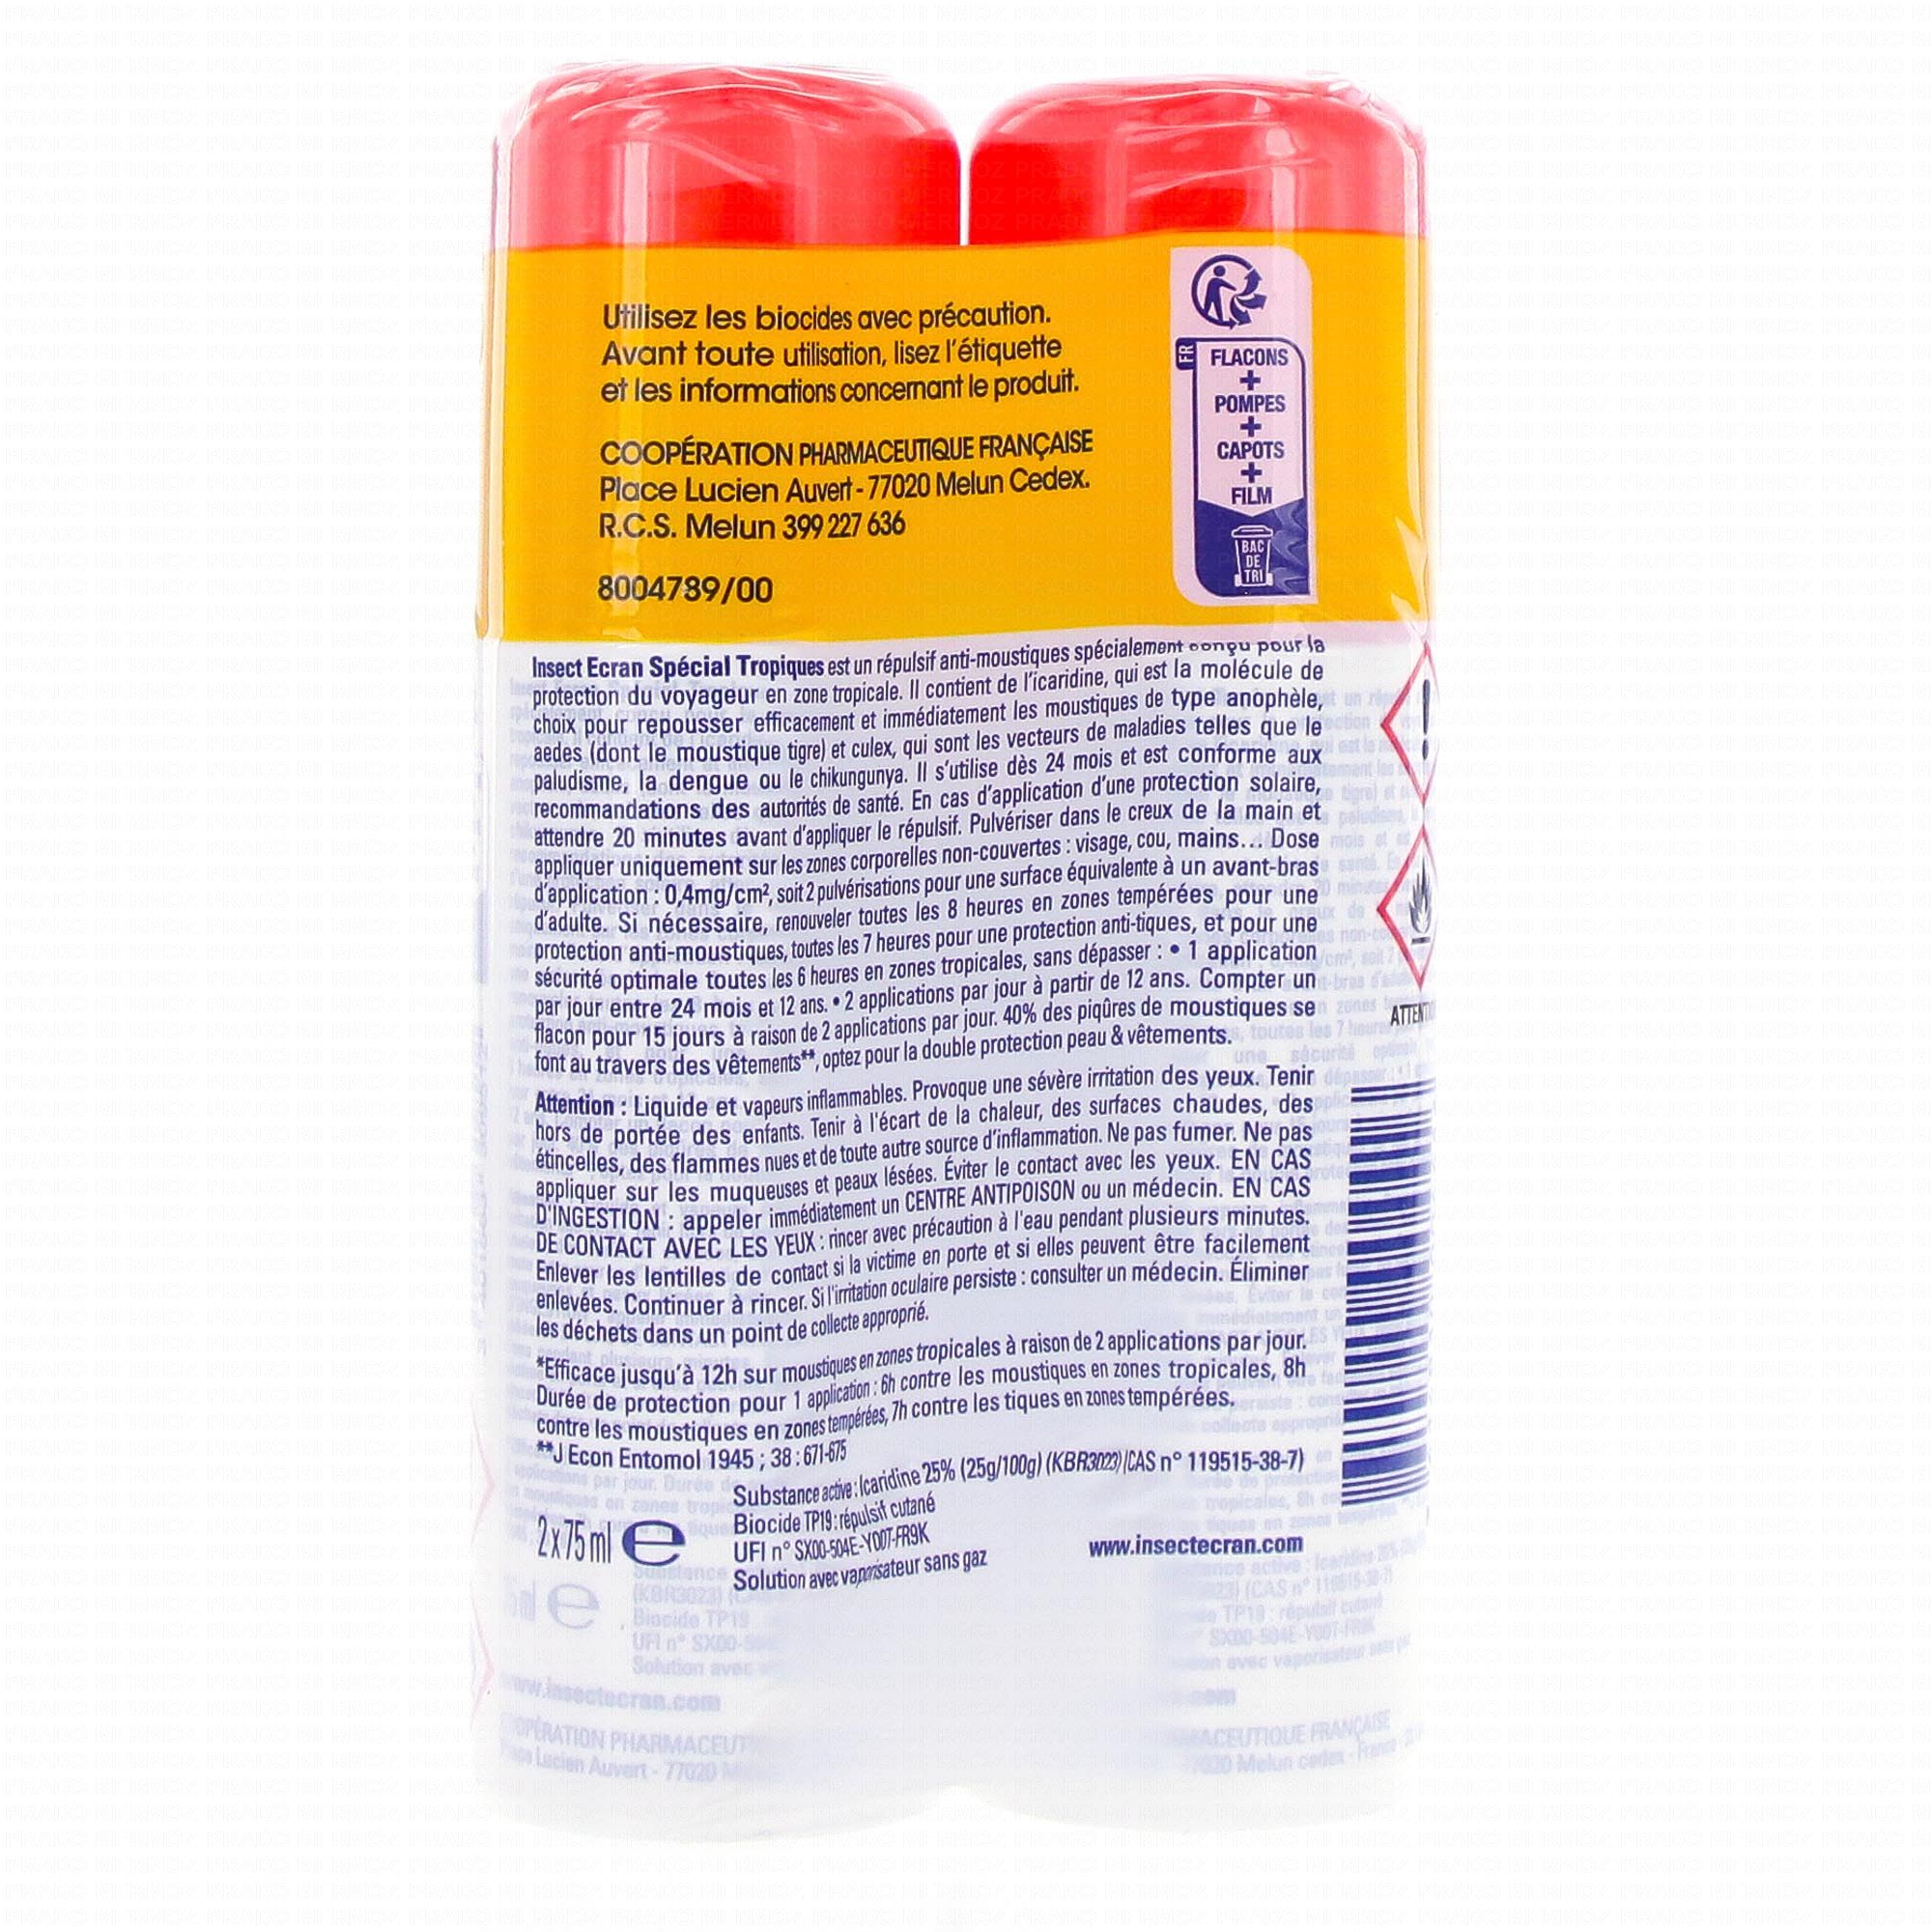 INSECT ECRAN Anti moustiques Familles Flacon 2x 100ml (-25% sur le 2ème) -  Pharmacie Prado Mermoz